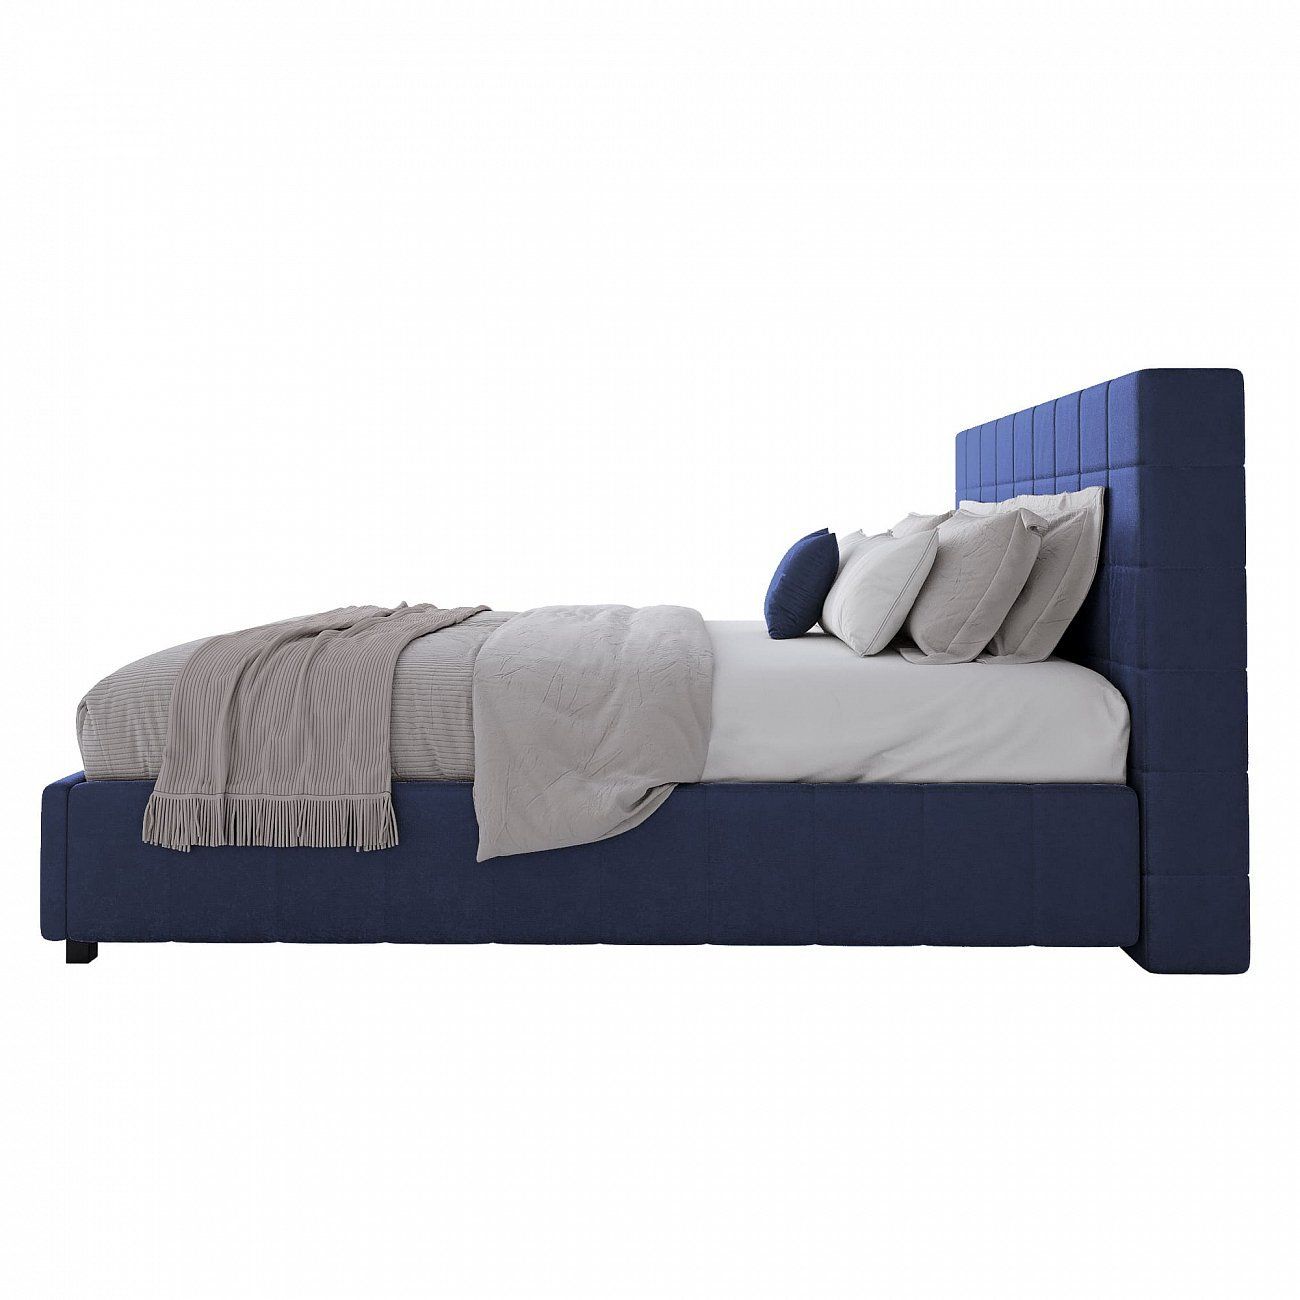 Кровать двуспальная 180х200 см синяя Shining Modern